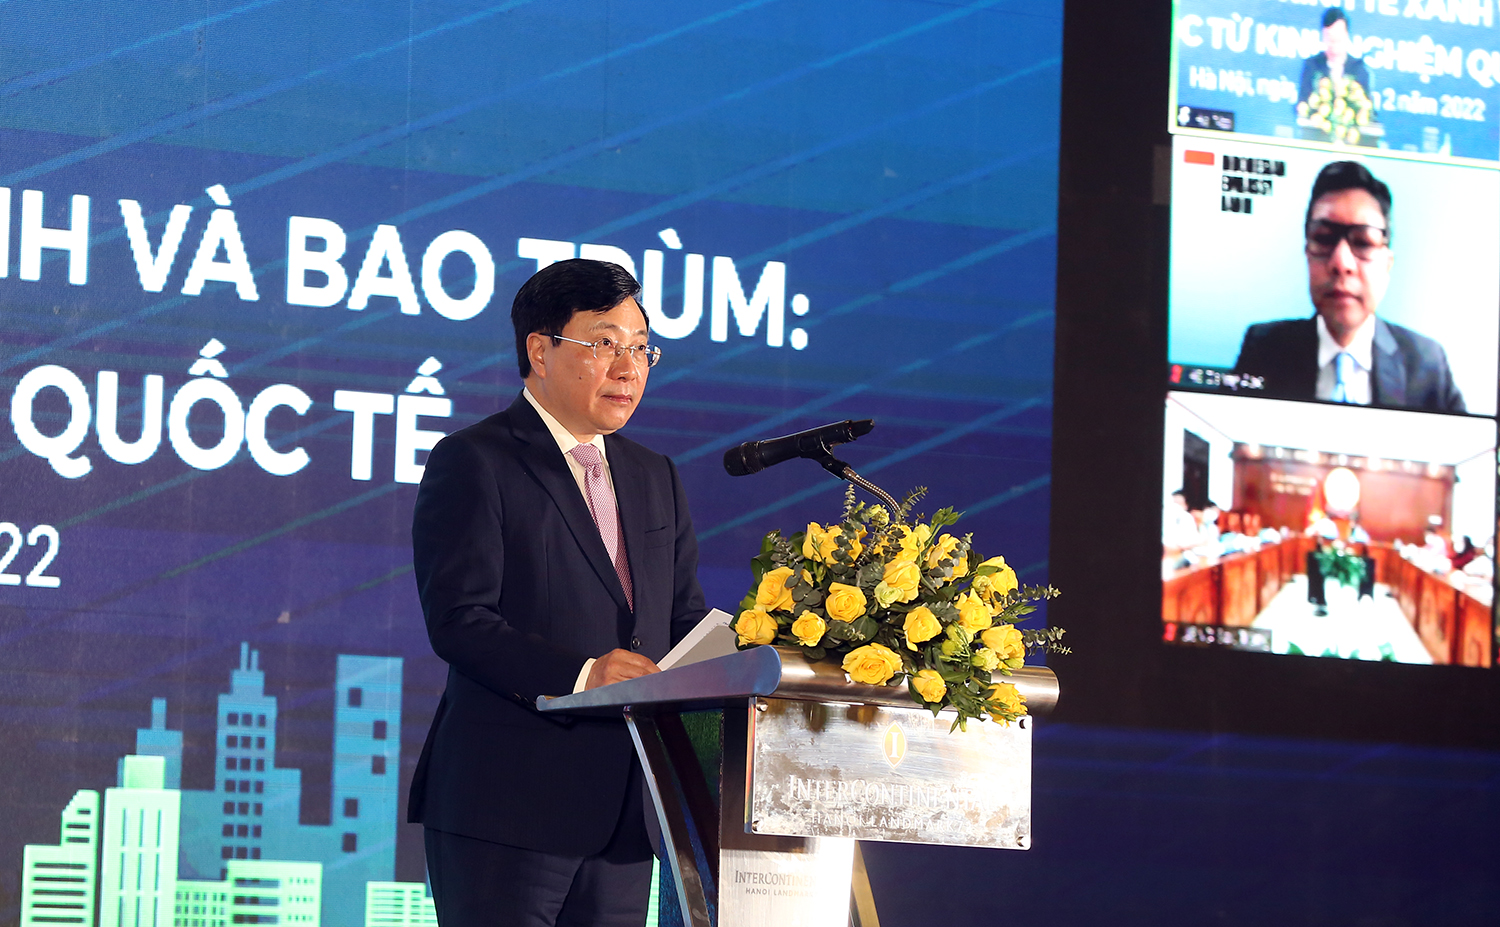 Việt Nam tích cực tham gia vào các xu thế lớn để hiện thực hóa mục tiêu phát triển bền vững, bao trùm - Ảnh 1.